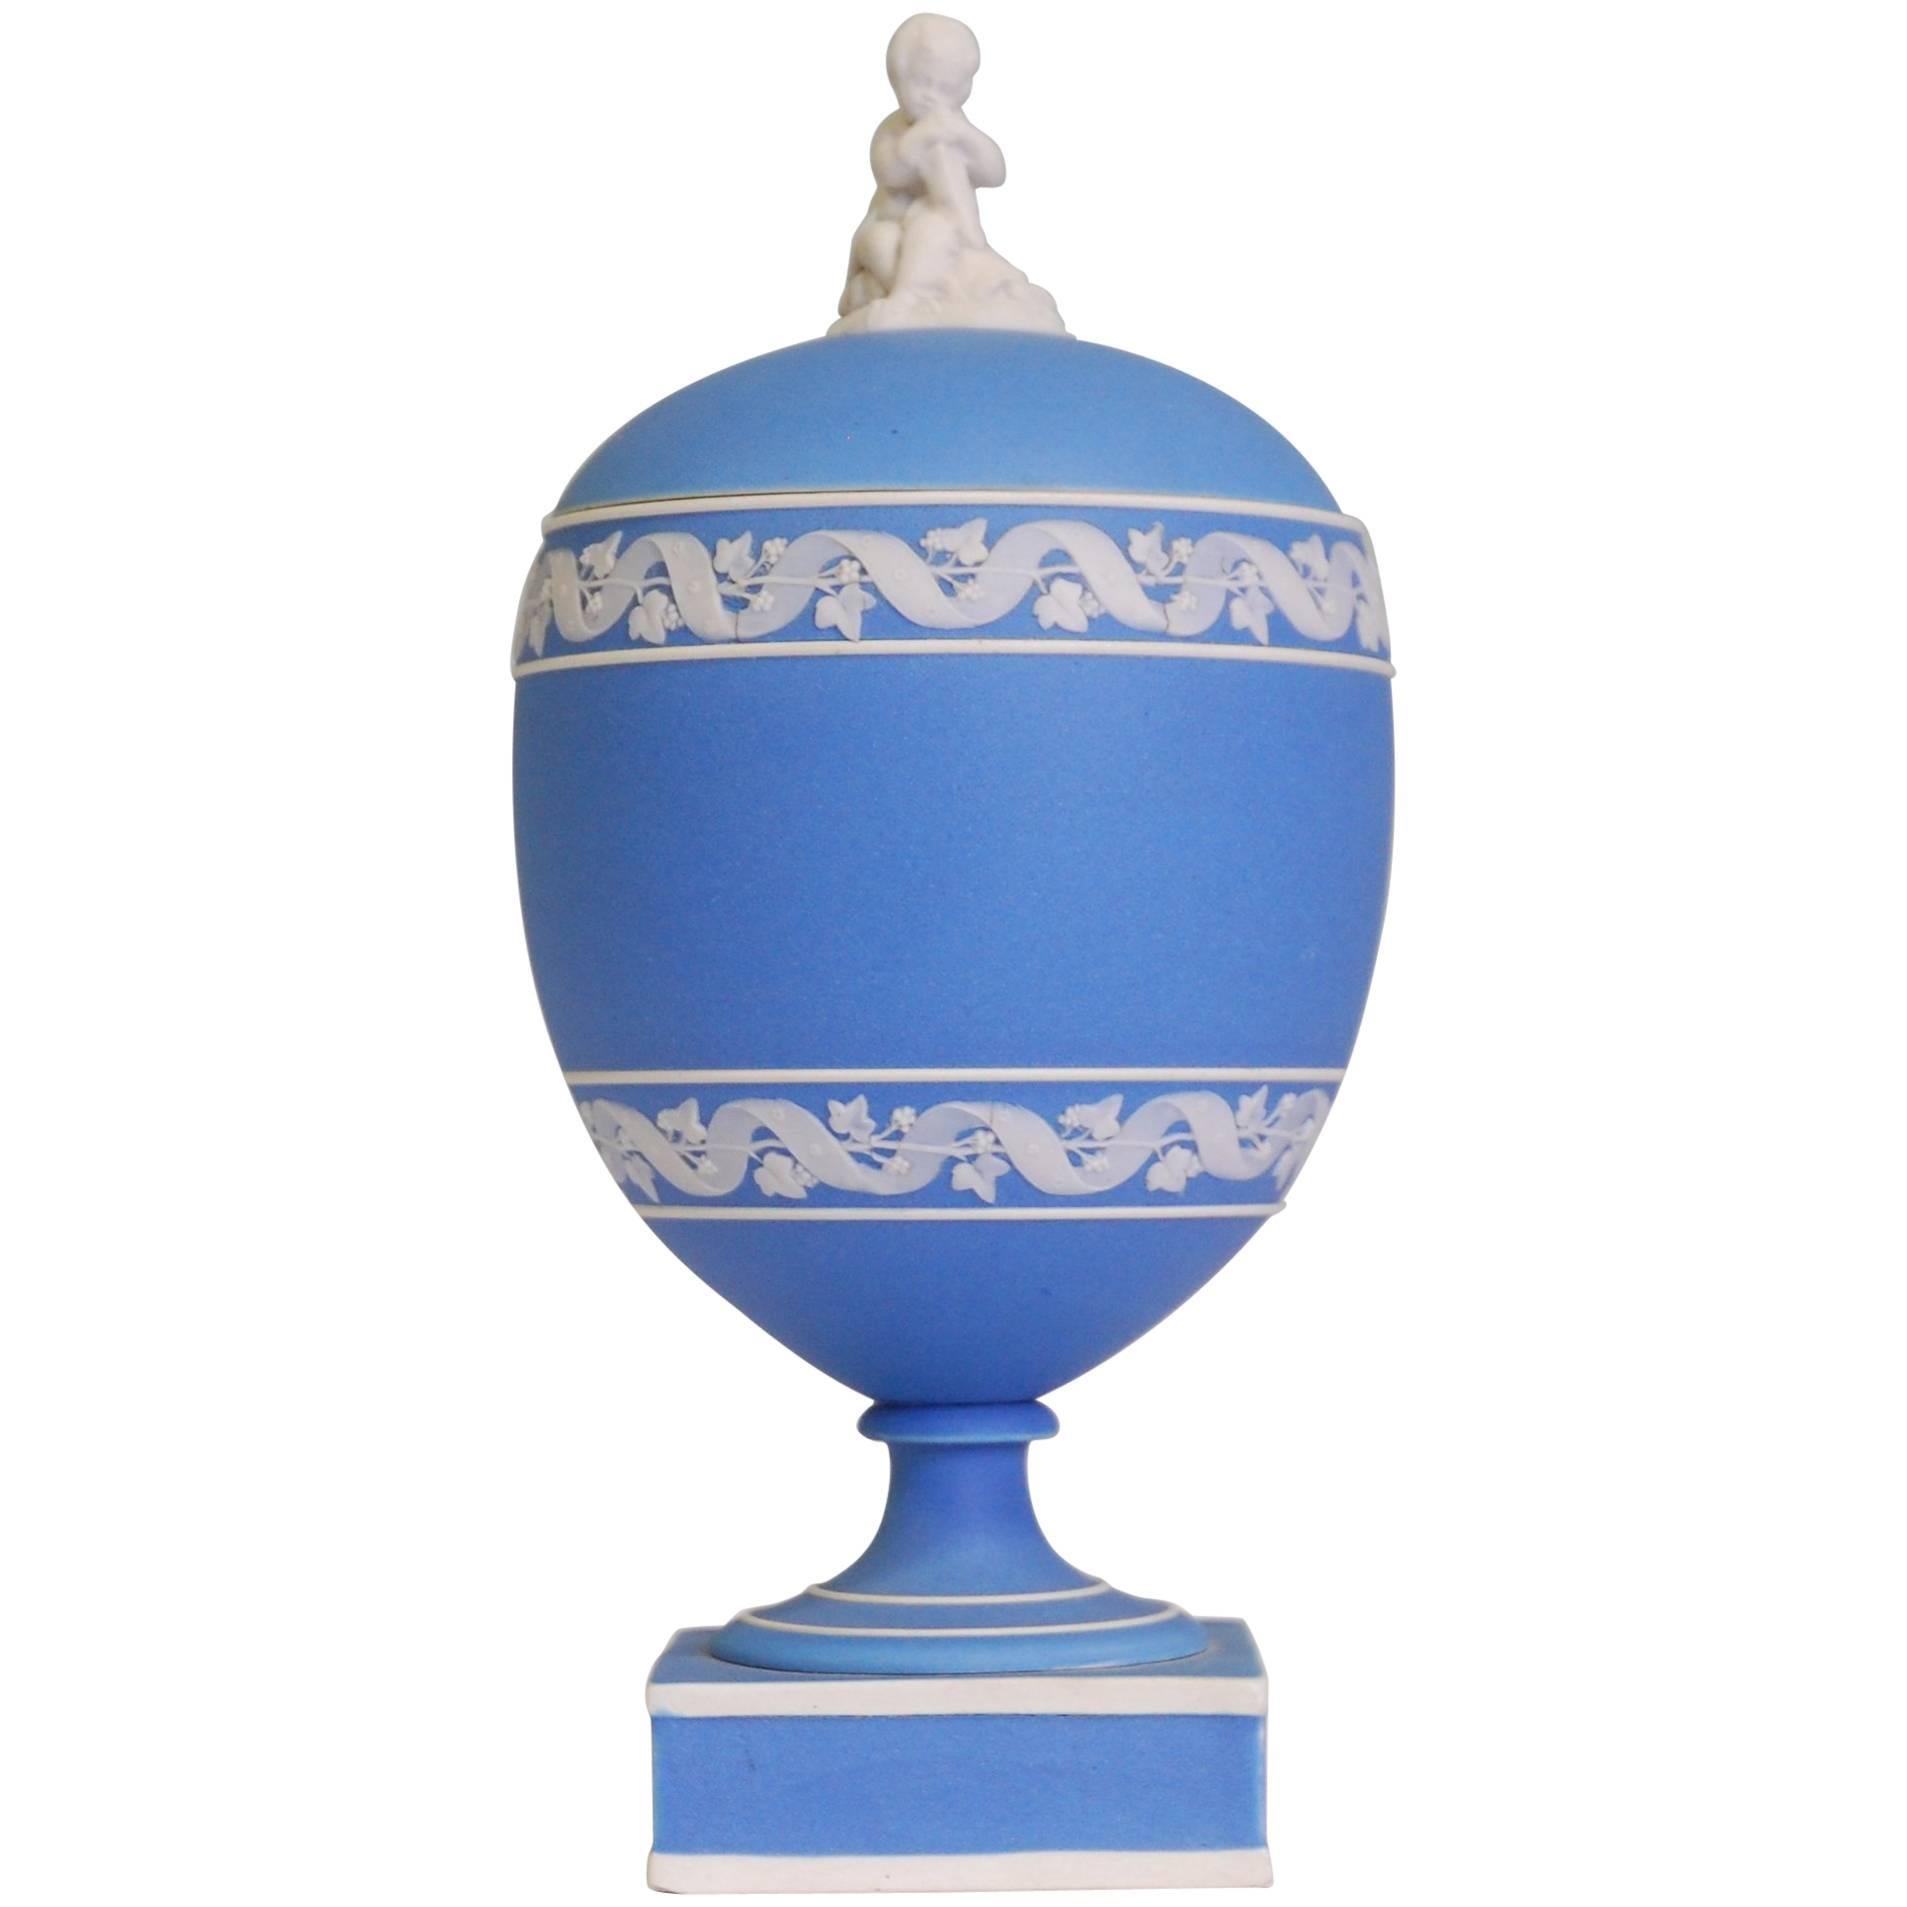 Ovoid Vase, Apollo, Wedgwood, circa 1800